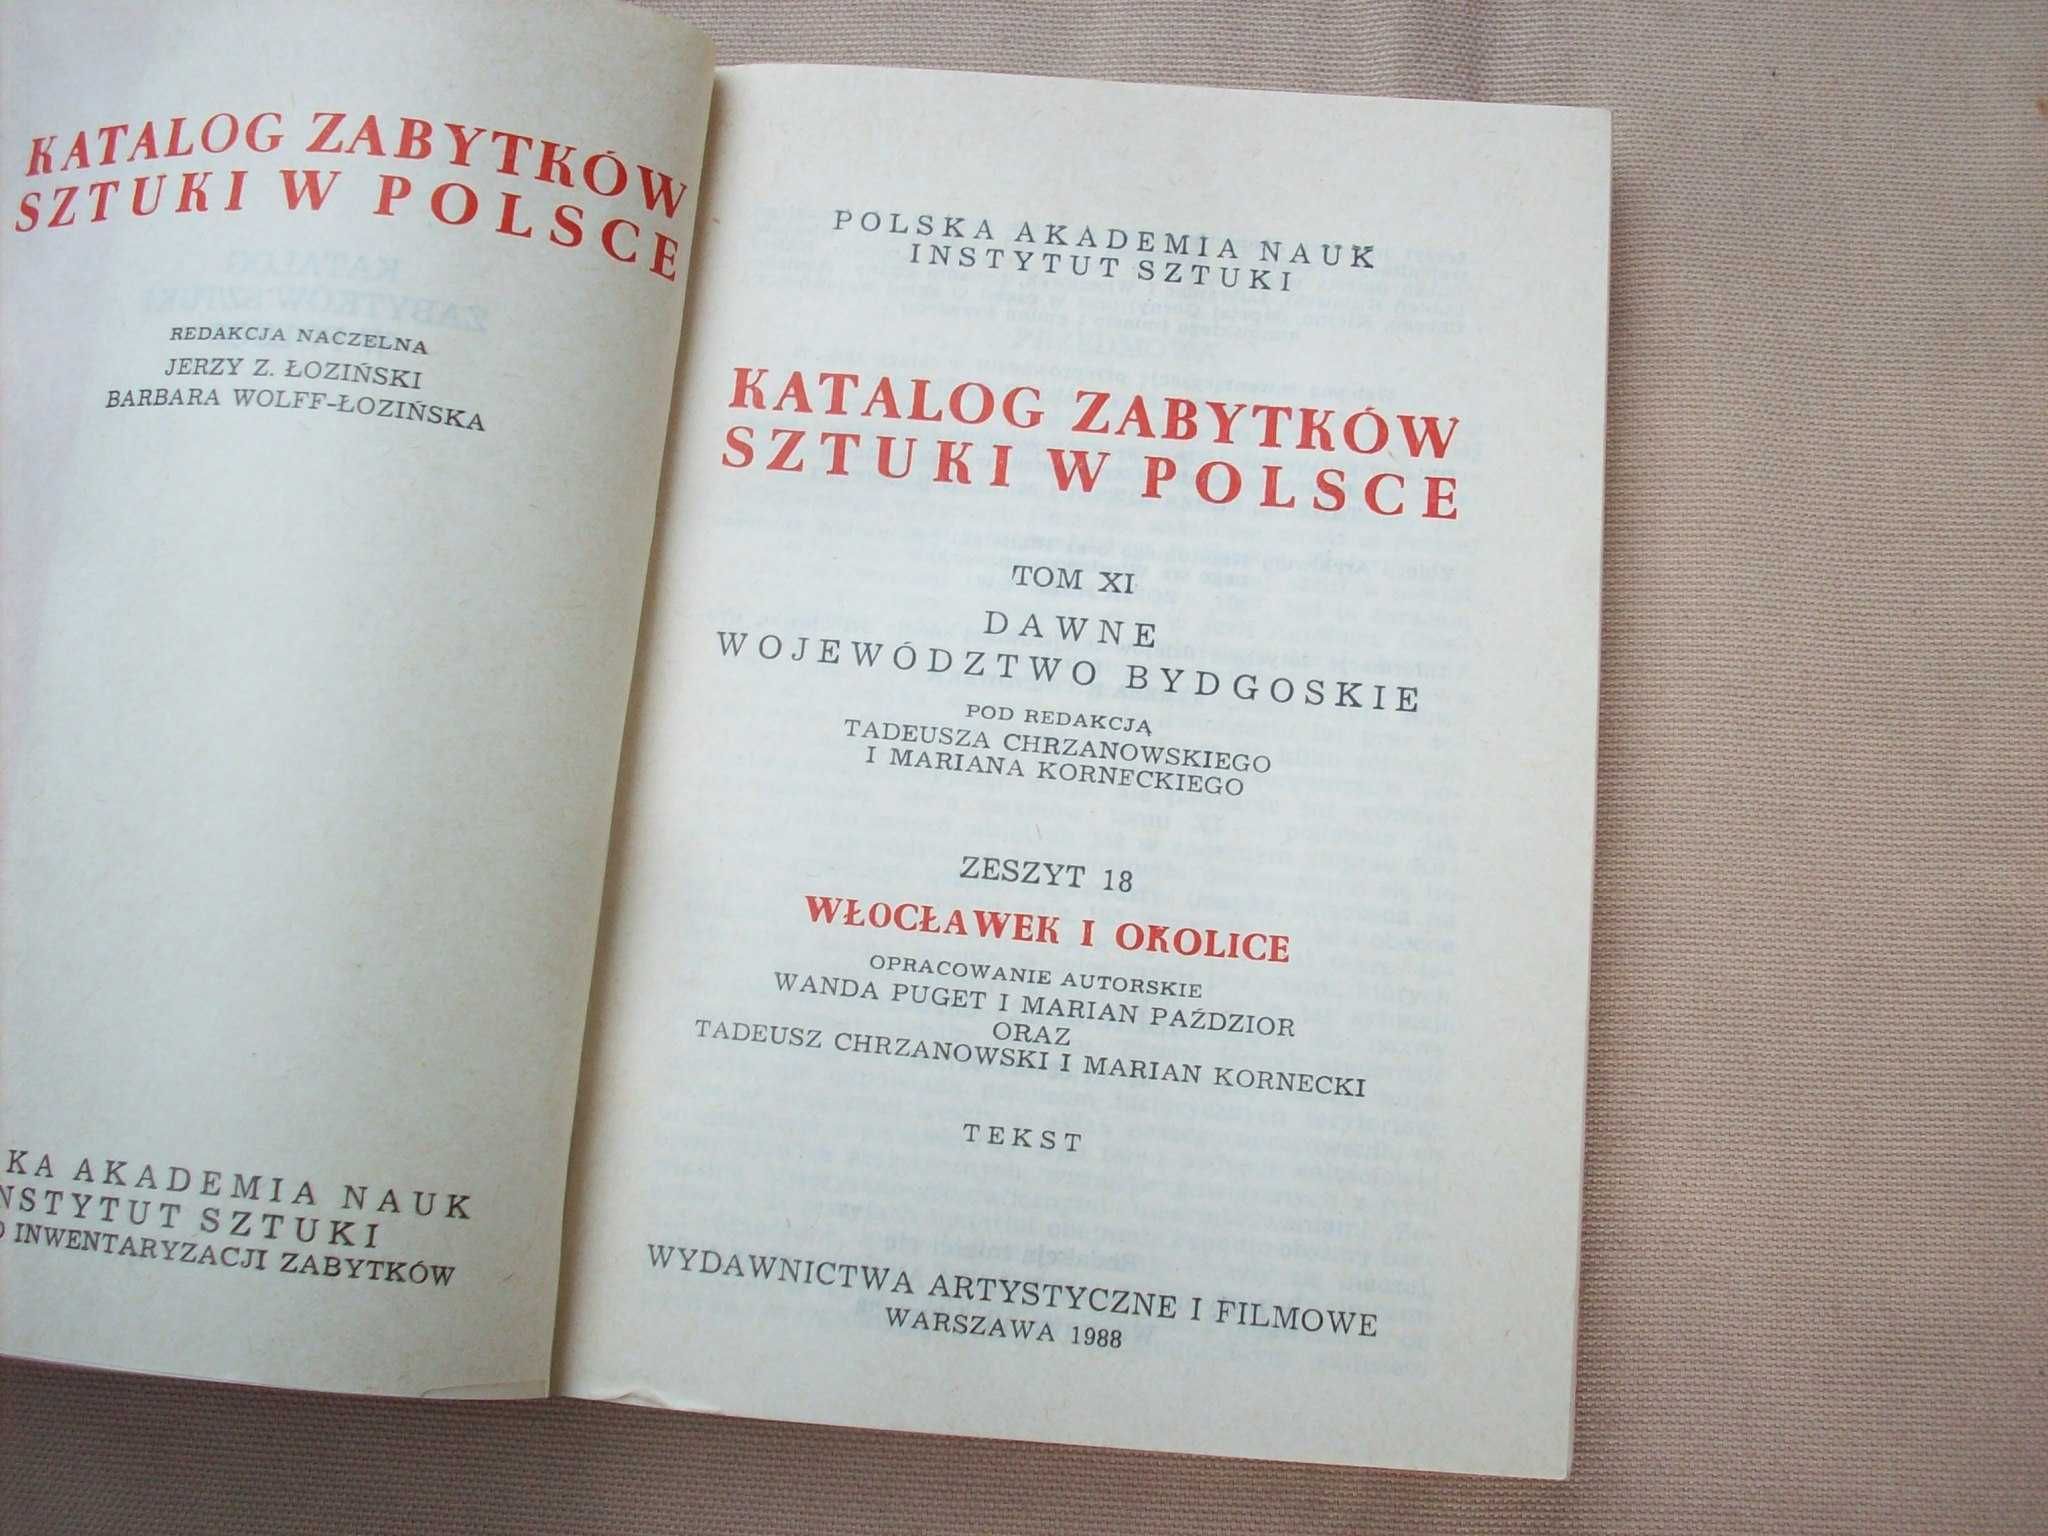 Włocławek i okolice, katalog zabytków, tekst, 1988.